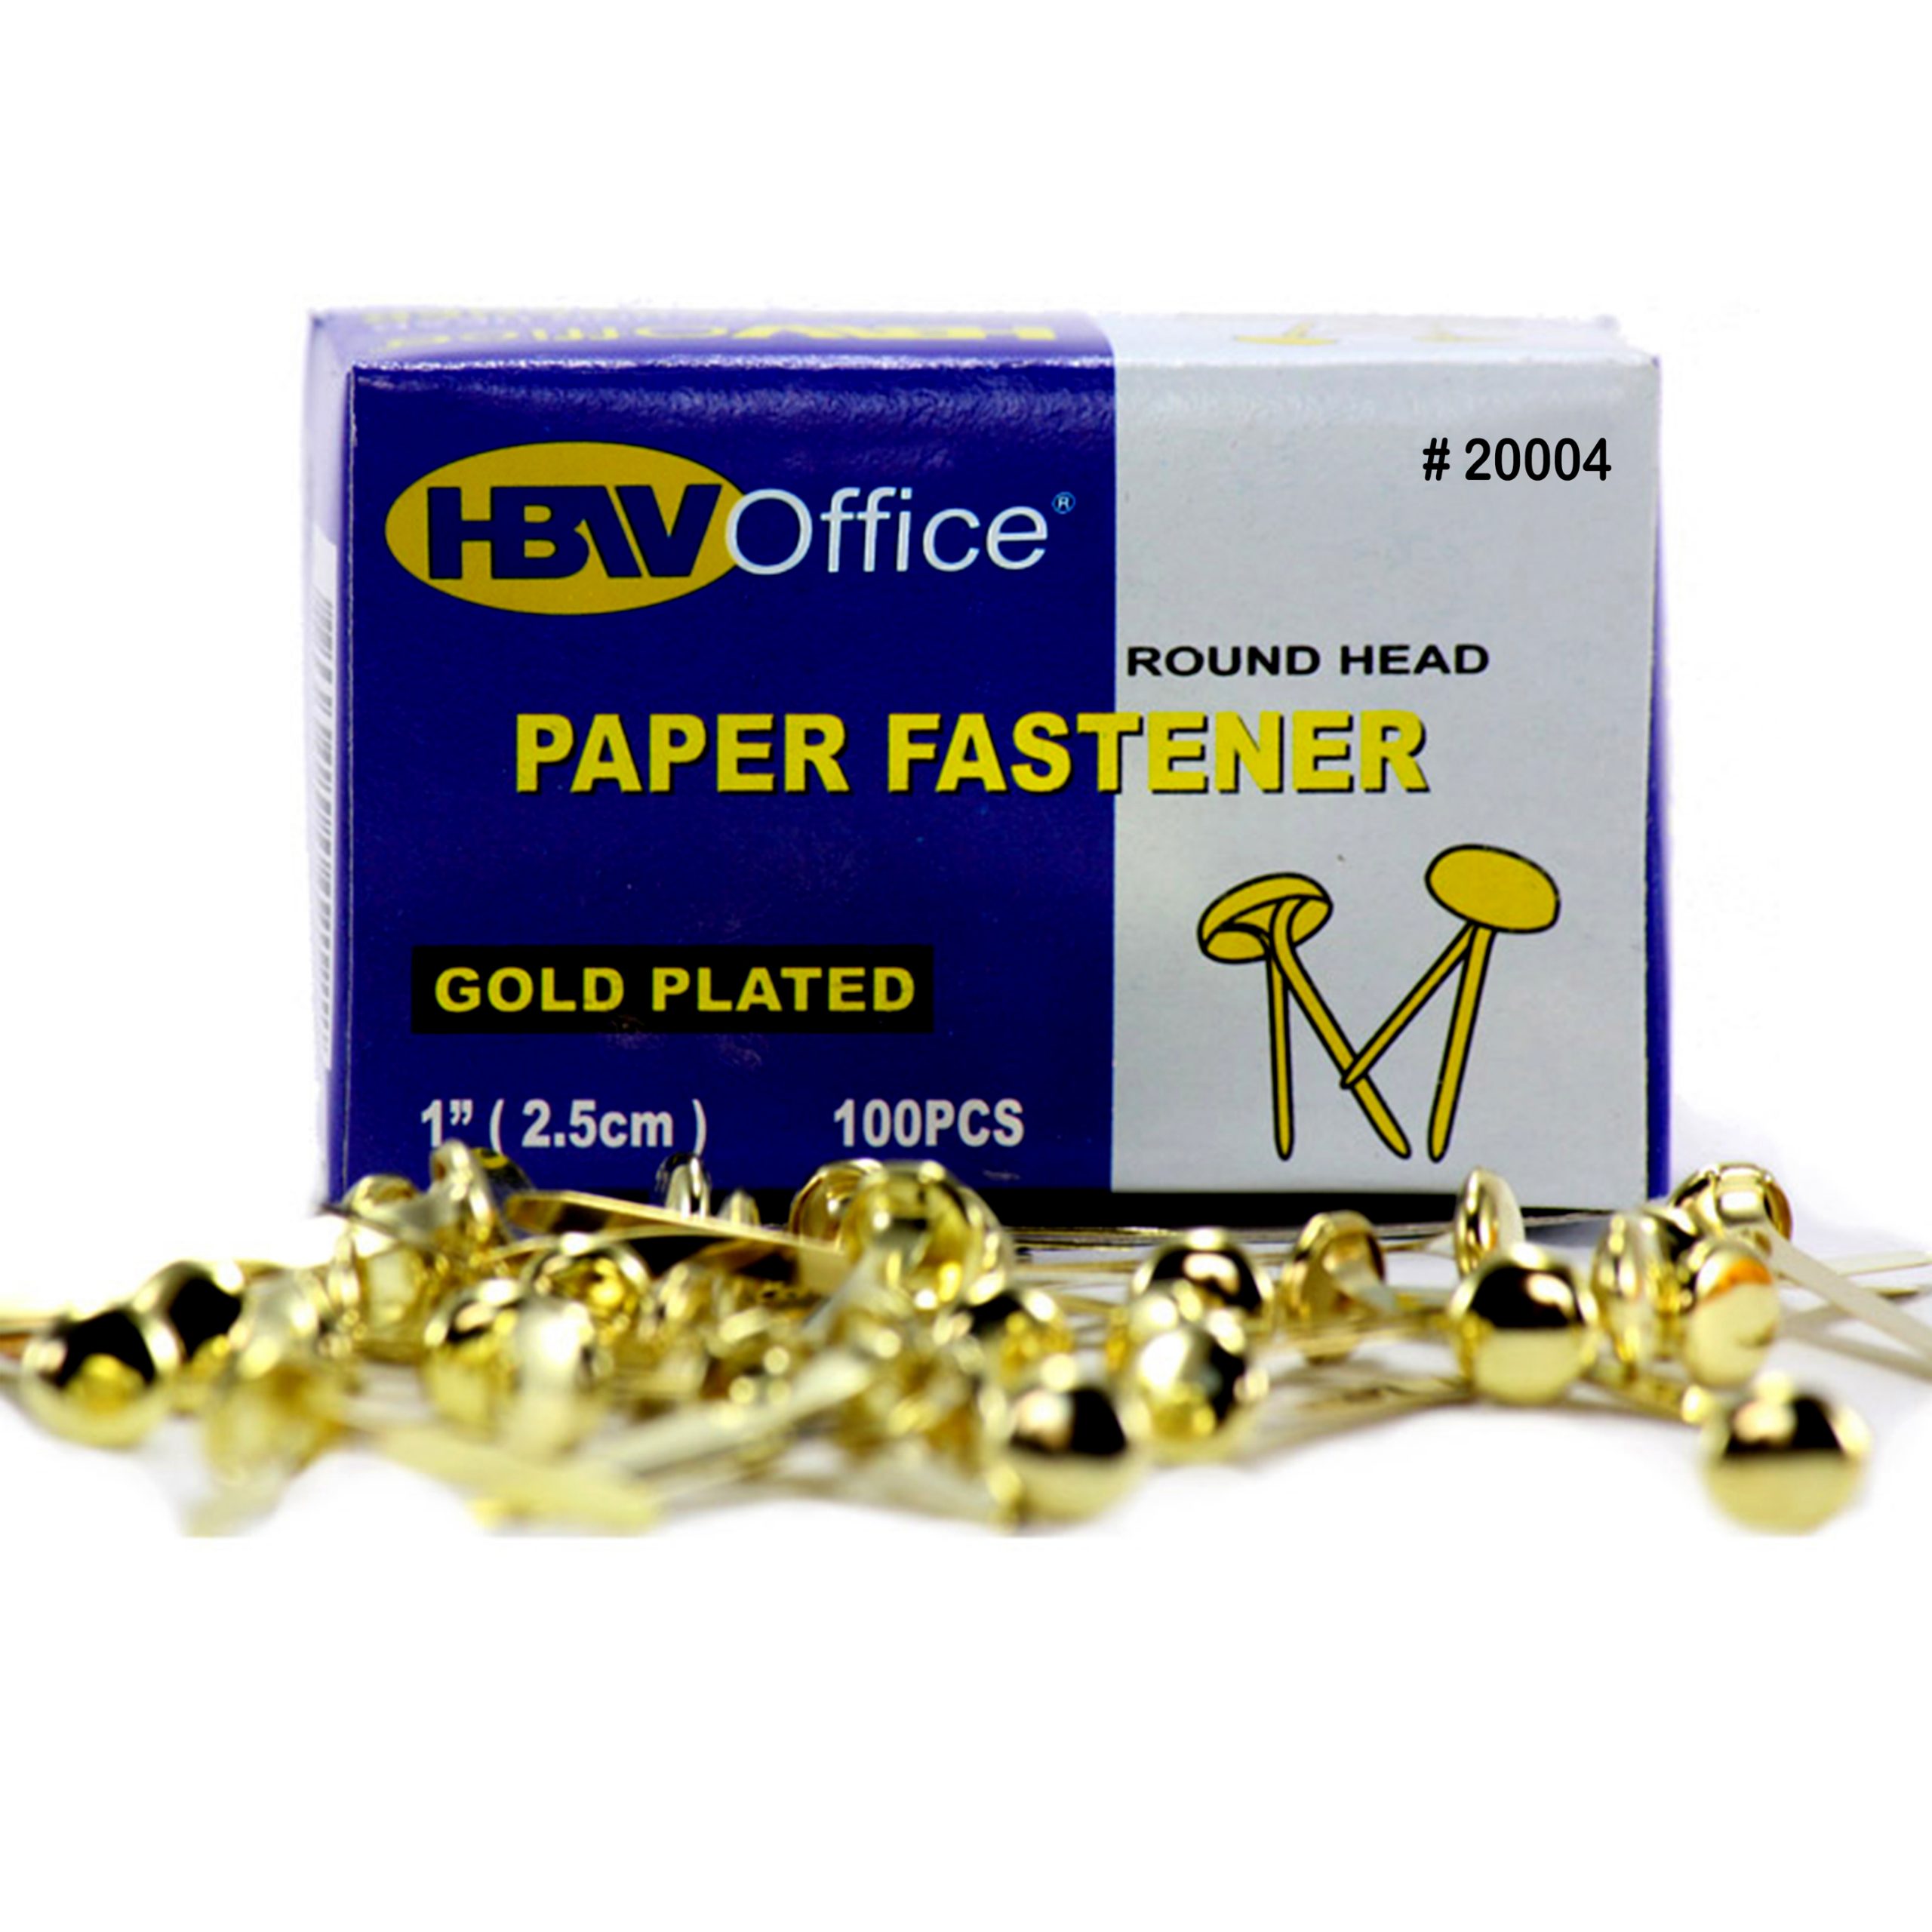 HBWOffice Paper Fastener 1 Round Head